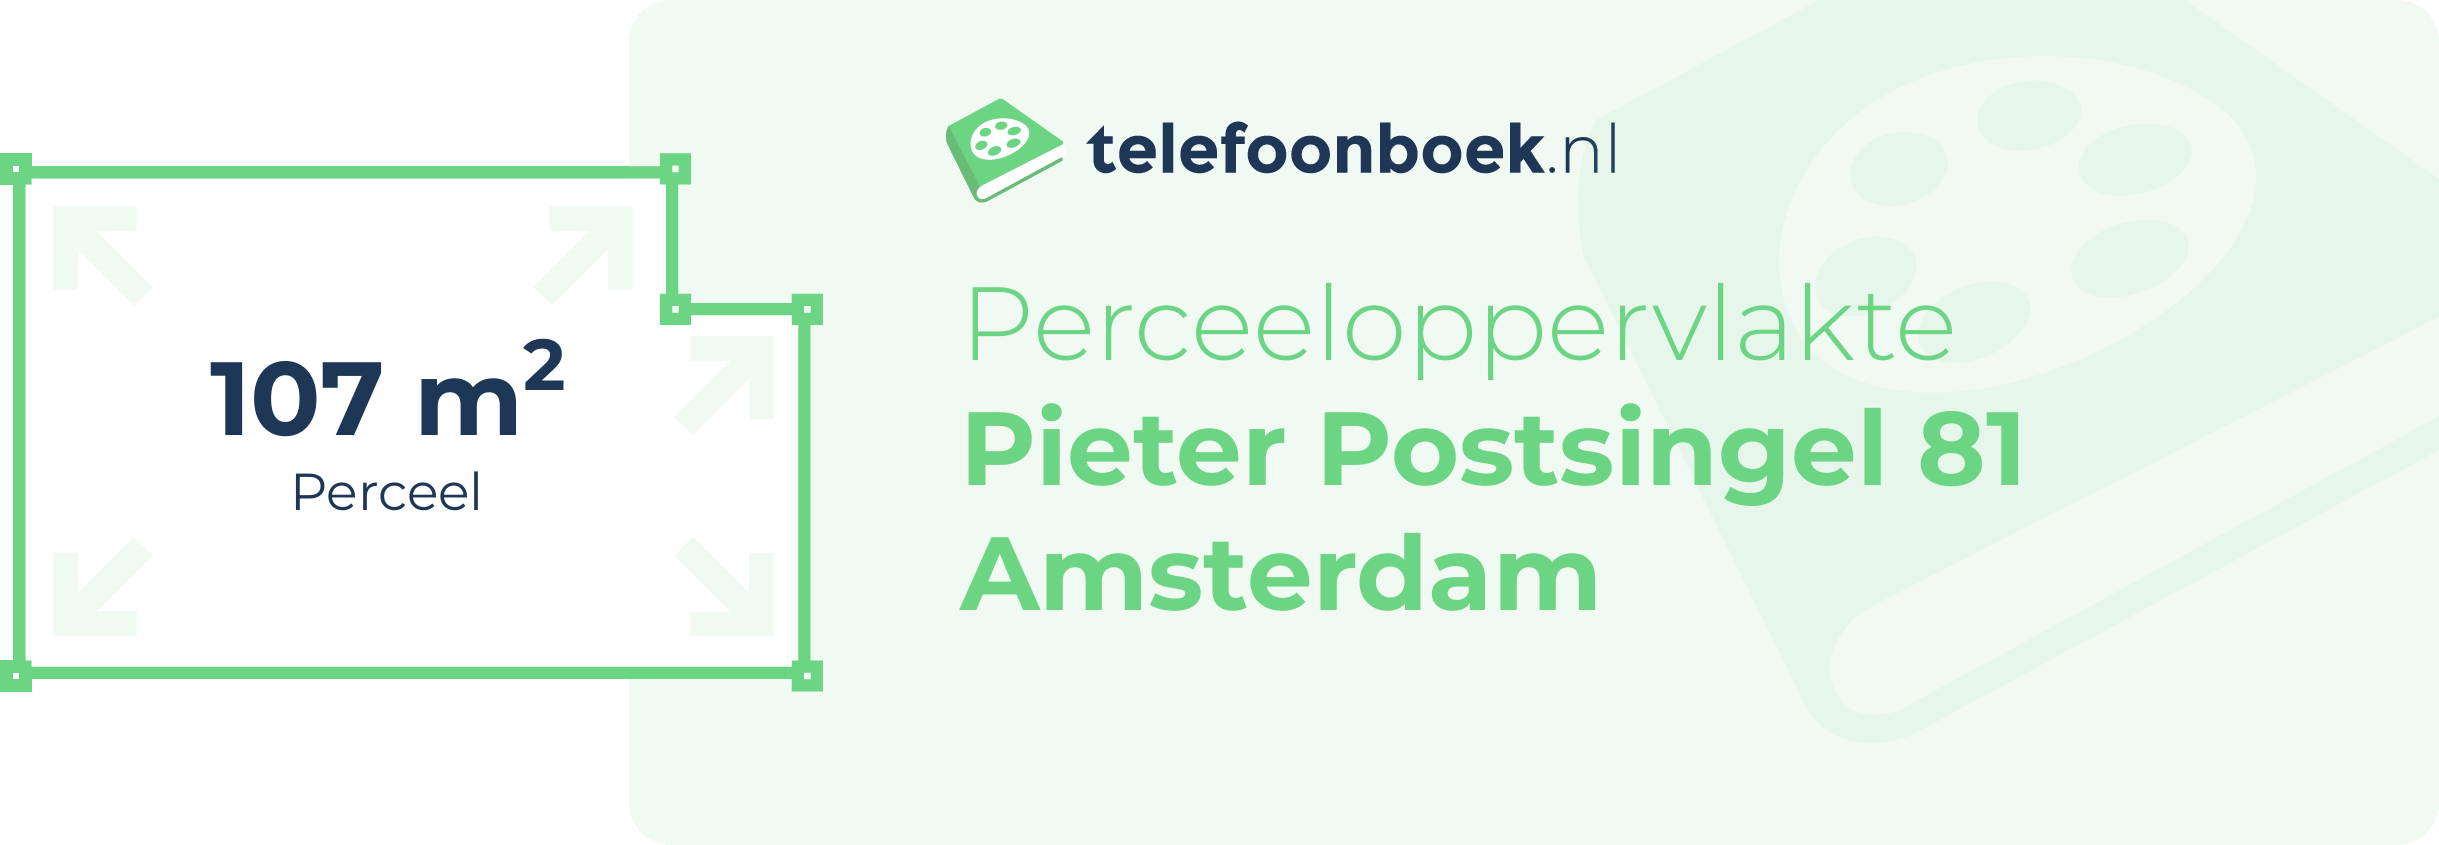 Perceeloppervlakte Pieter Postsingel 81 Amsterdam